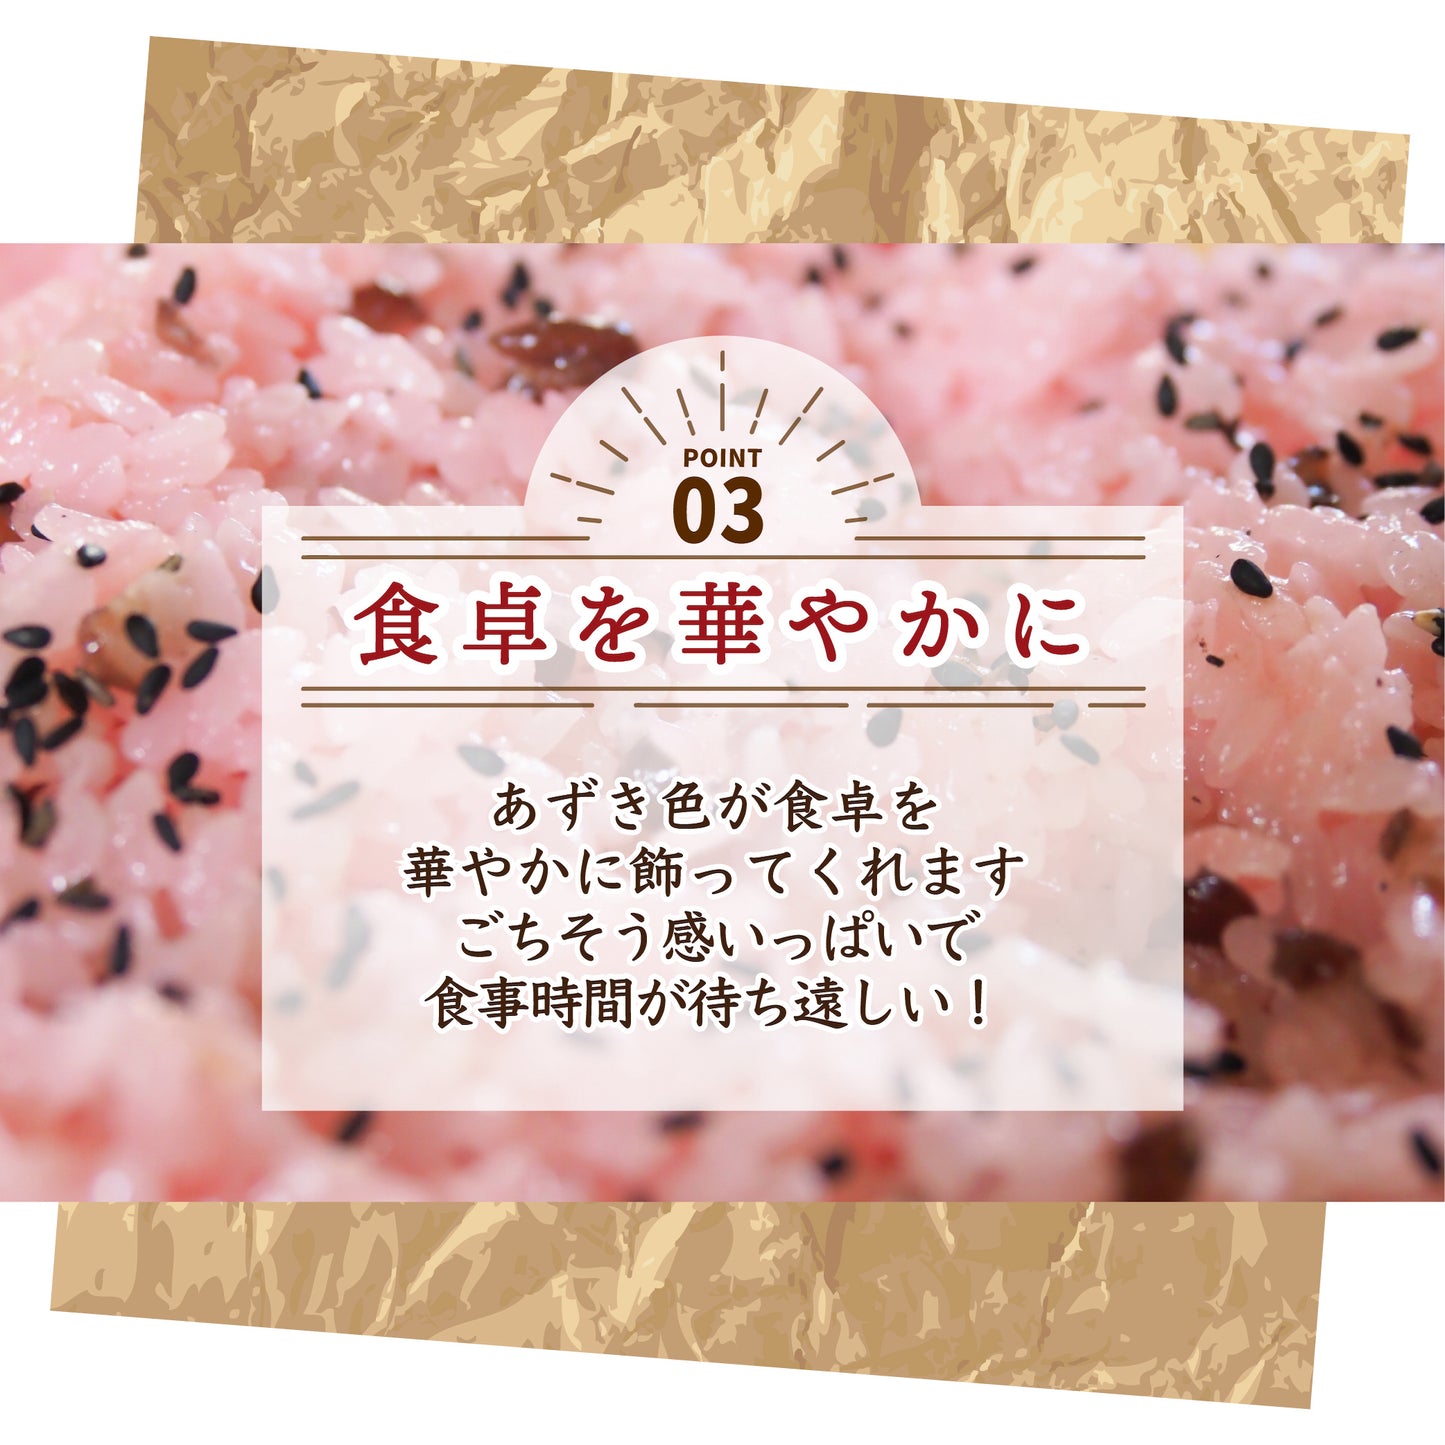 国産 ひきわり小豆 900g(450g×2袋)